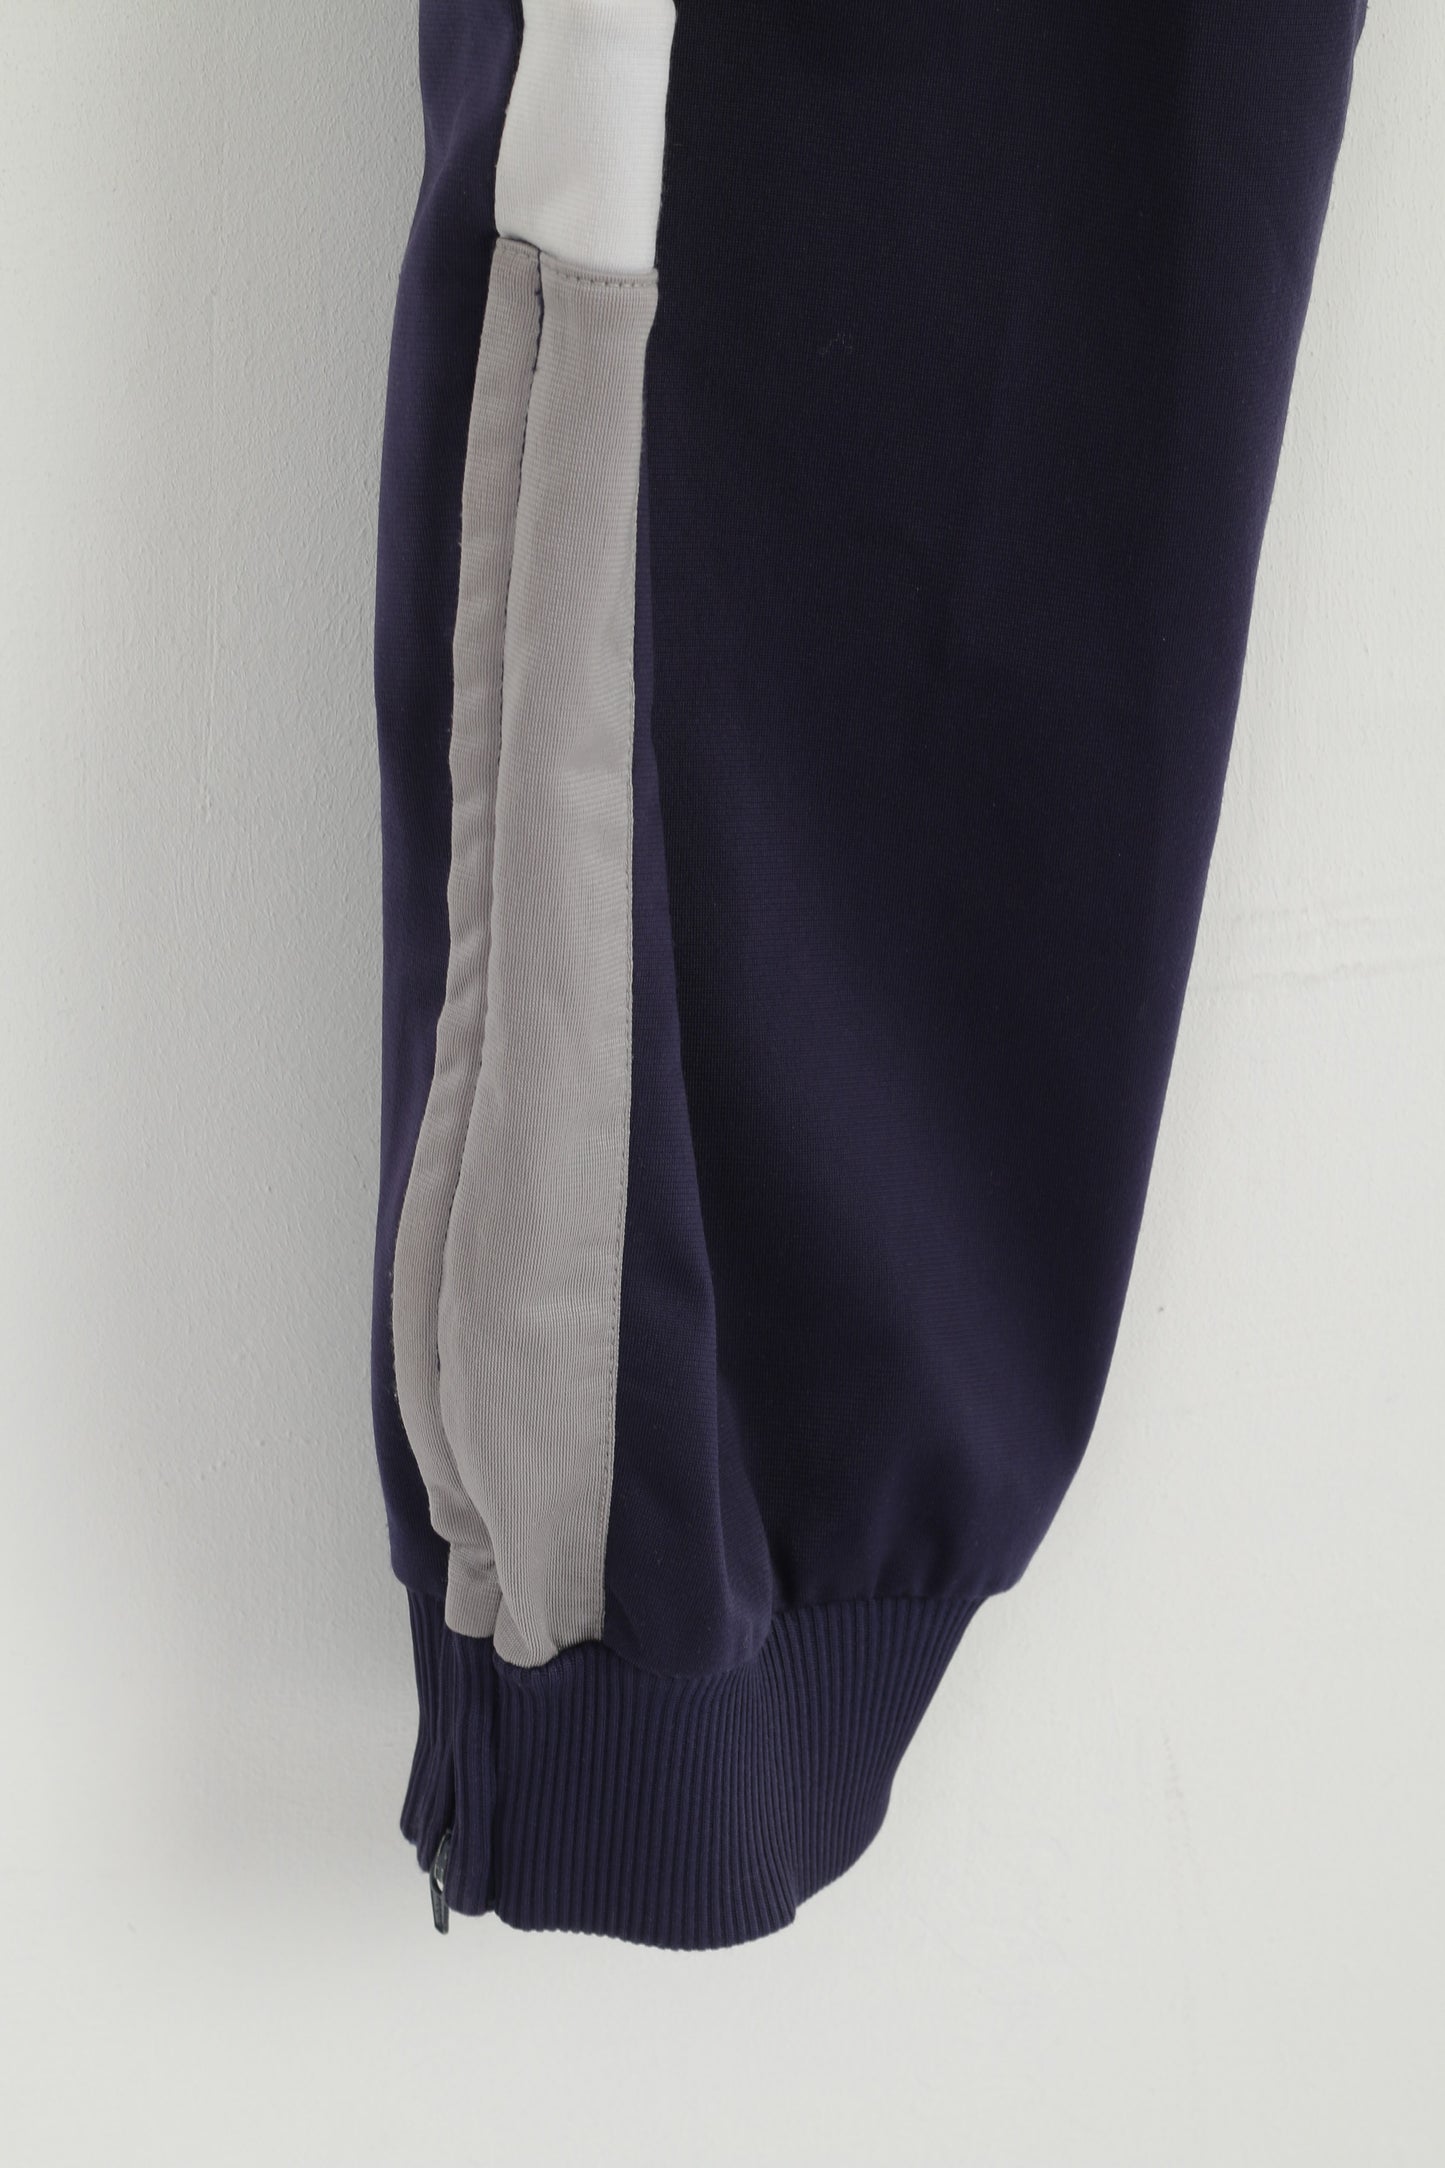 Pantaloni sportivi Adidas da uomo 180 M. Pantaloni sportivi con cintura con coulisse vintage blu scuro lucido